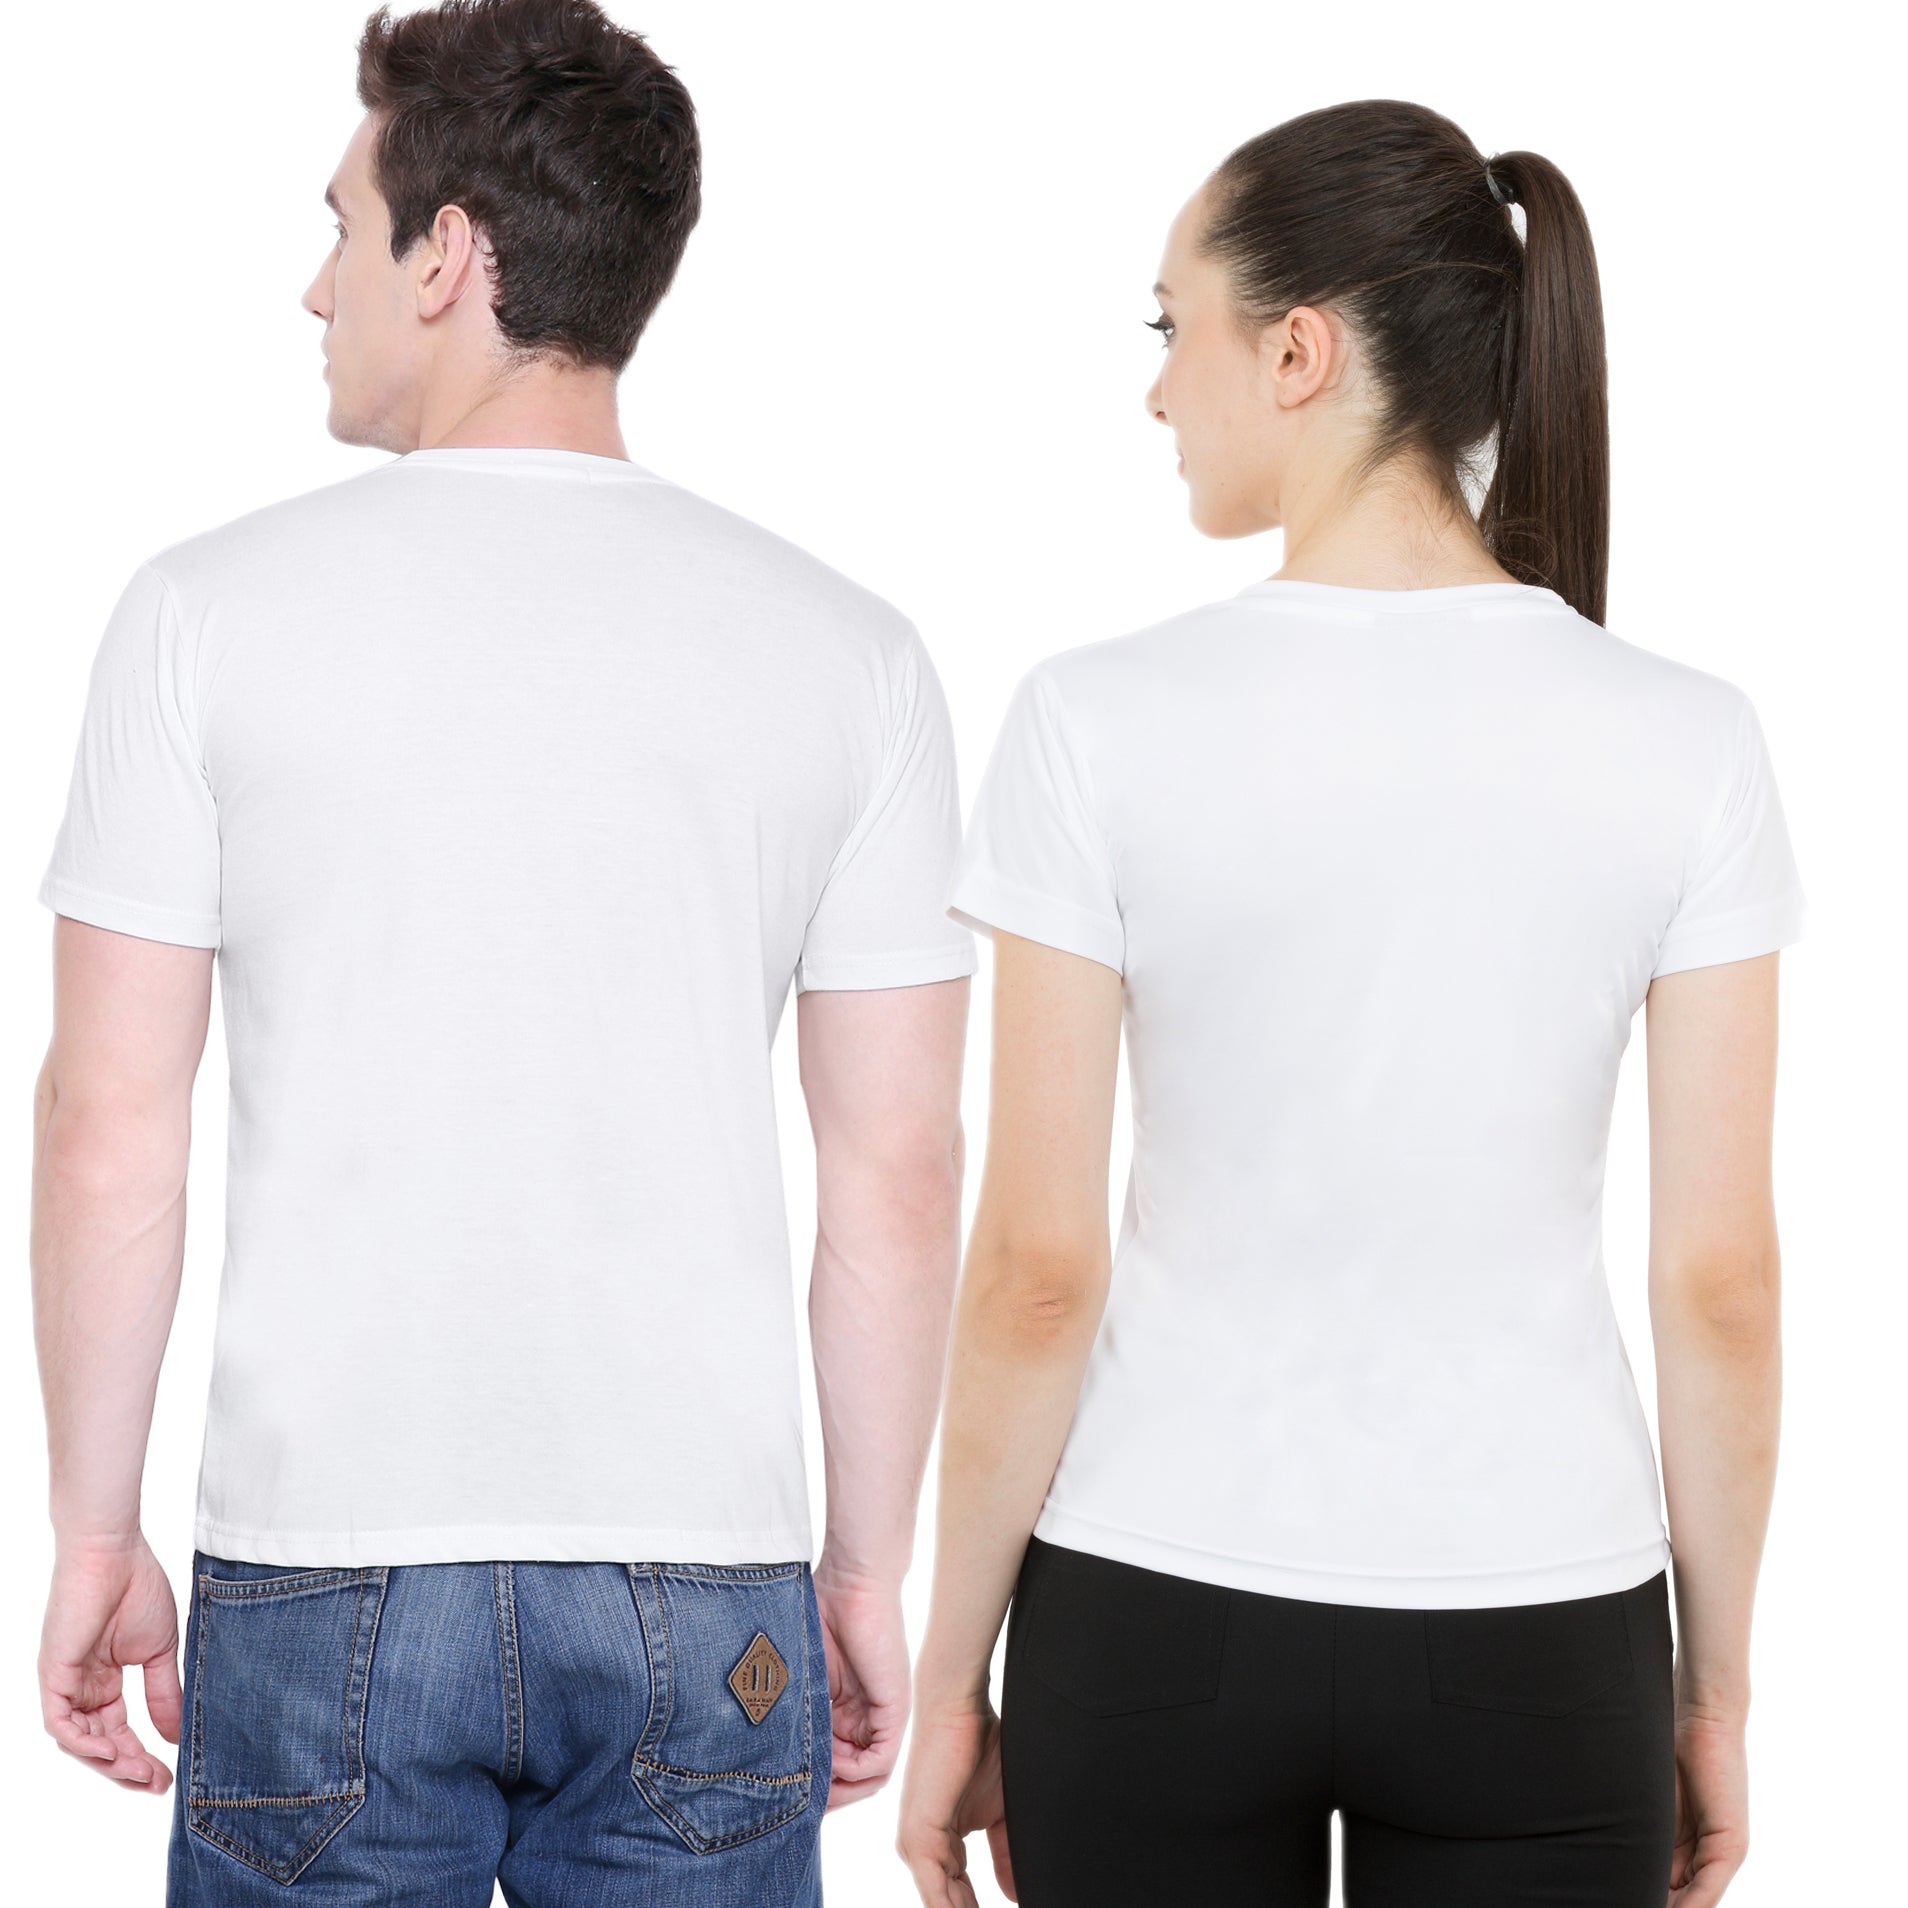 Love Bugs matching Couple T shirts- White